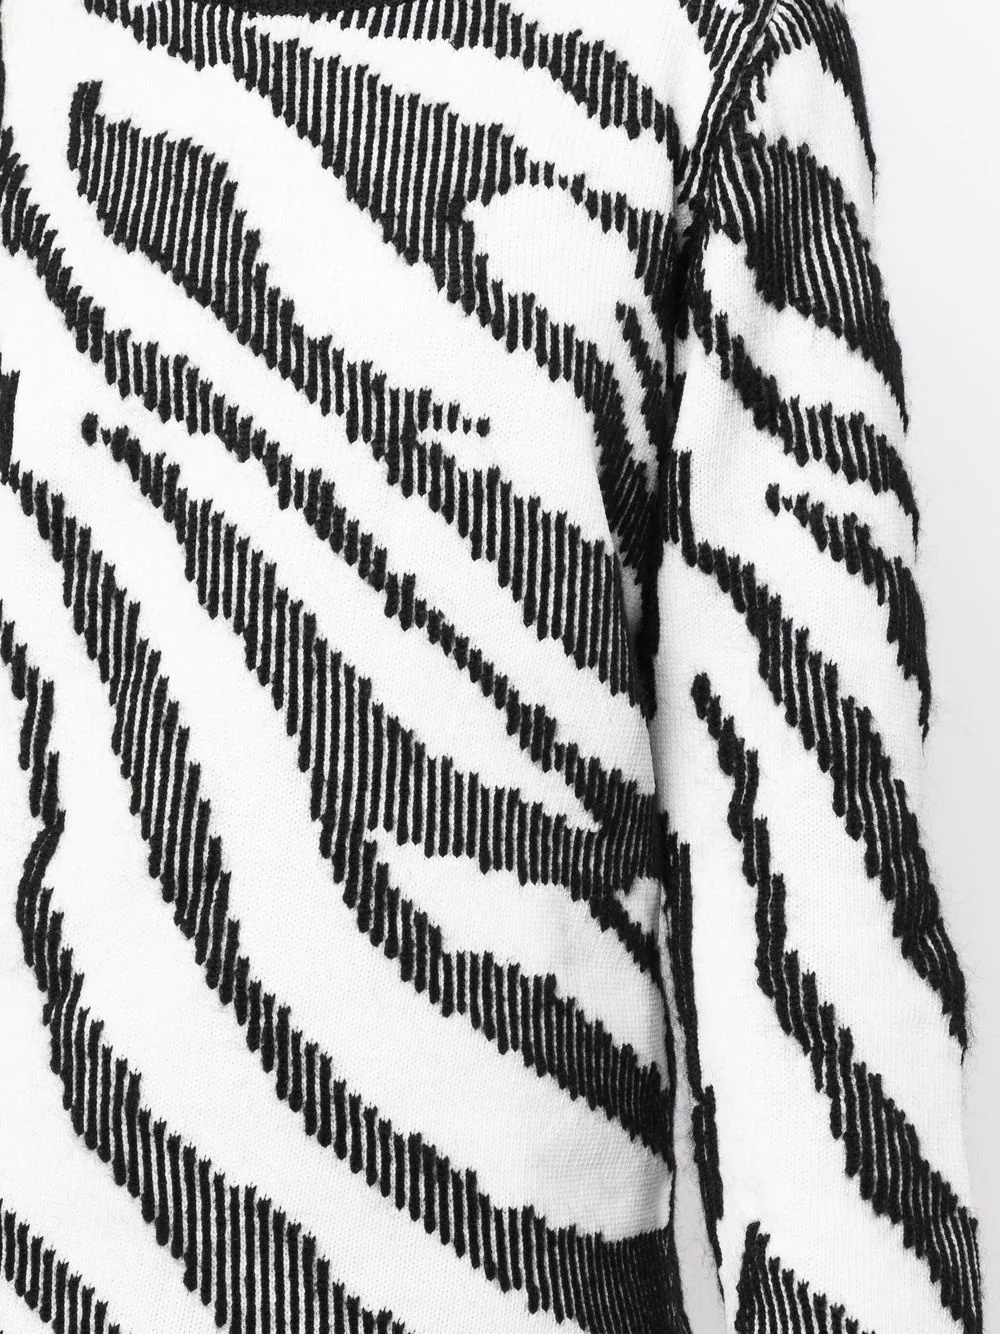 intarsia-knit zebra pattern jumper - 5